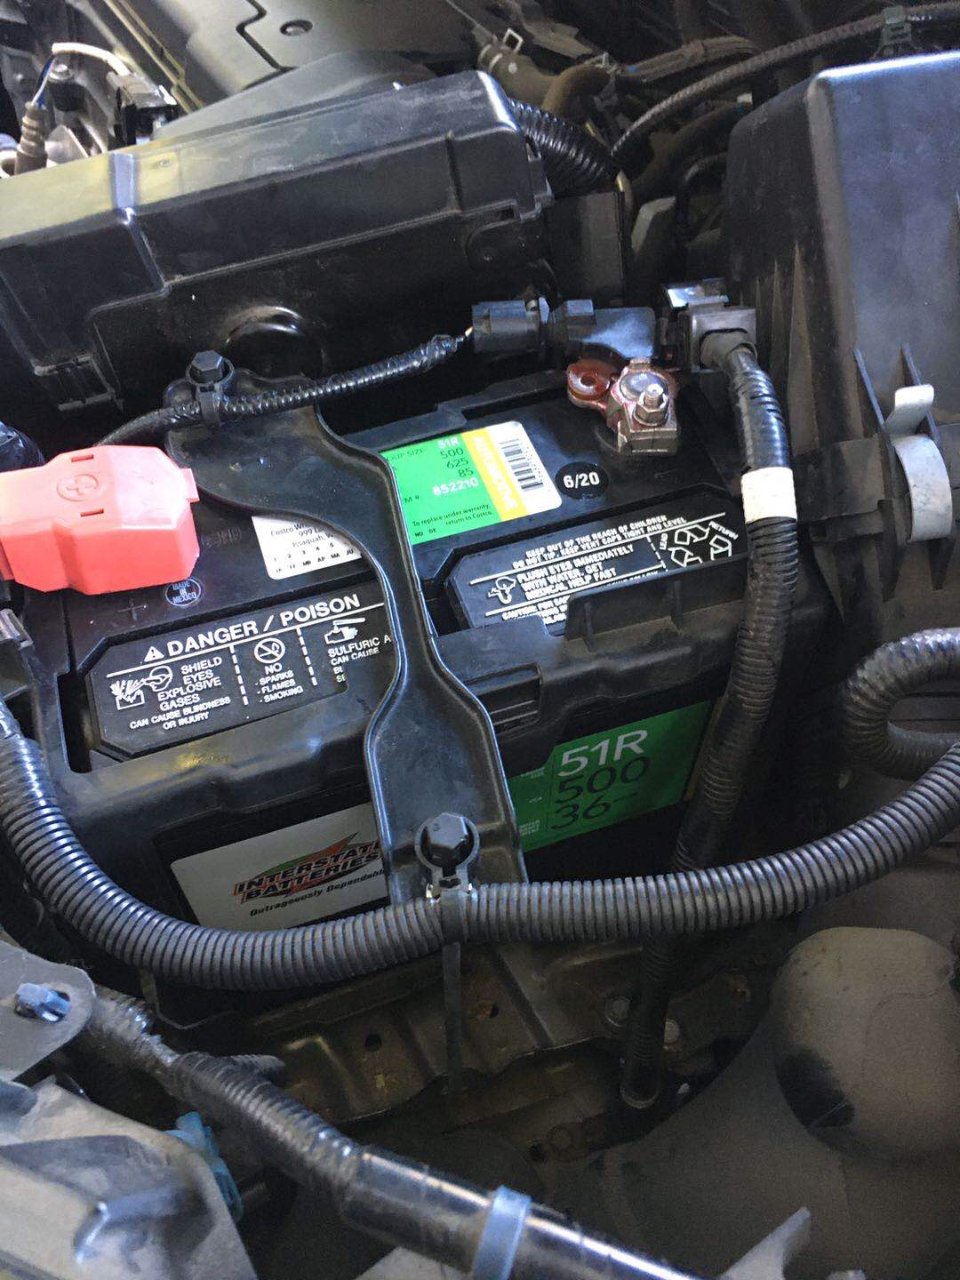 🚗论换电池的重要性⚠️自己更换汽车电池步...